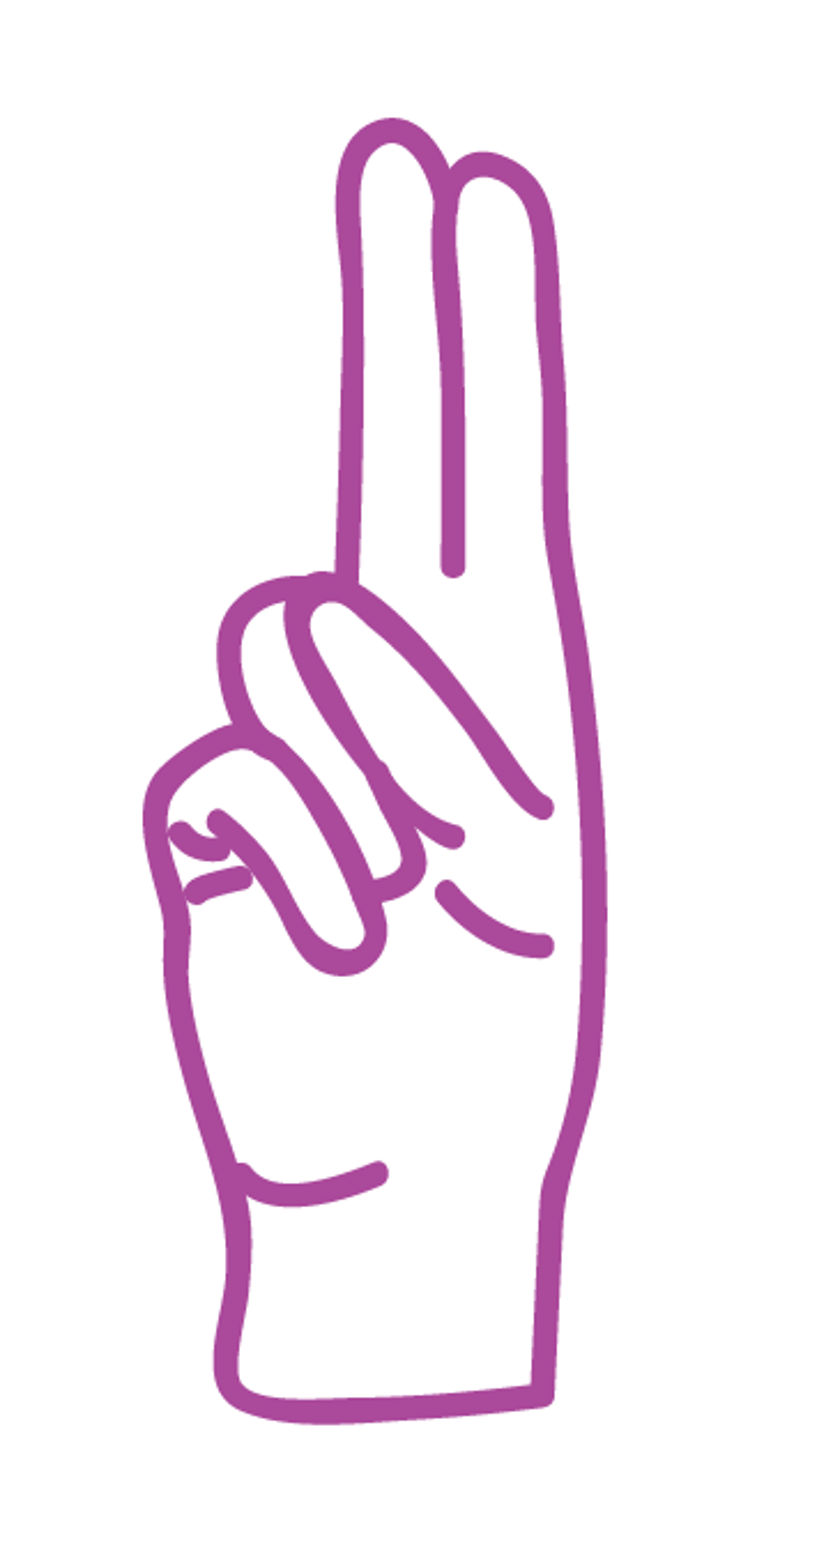 The letter U in ASL